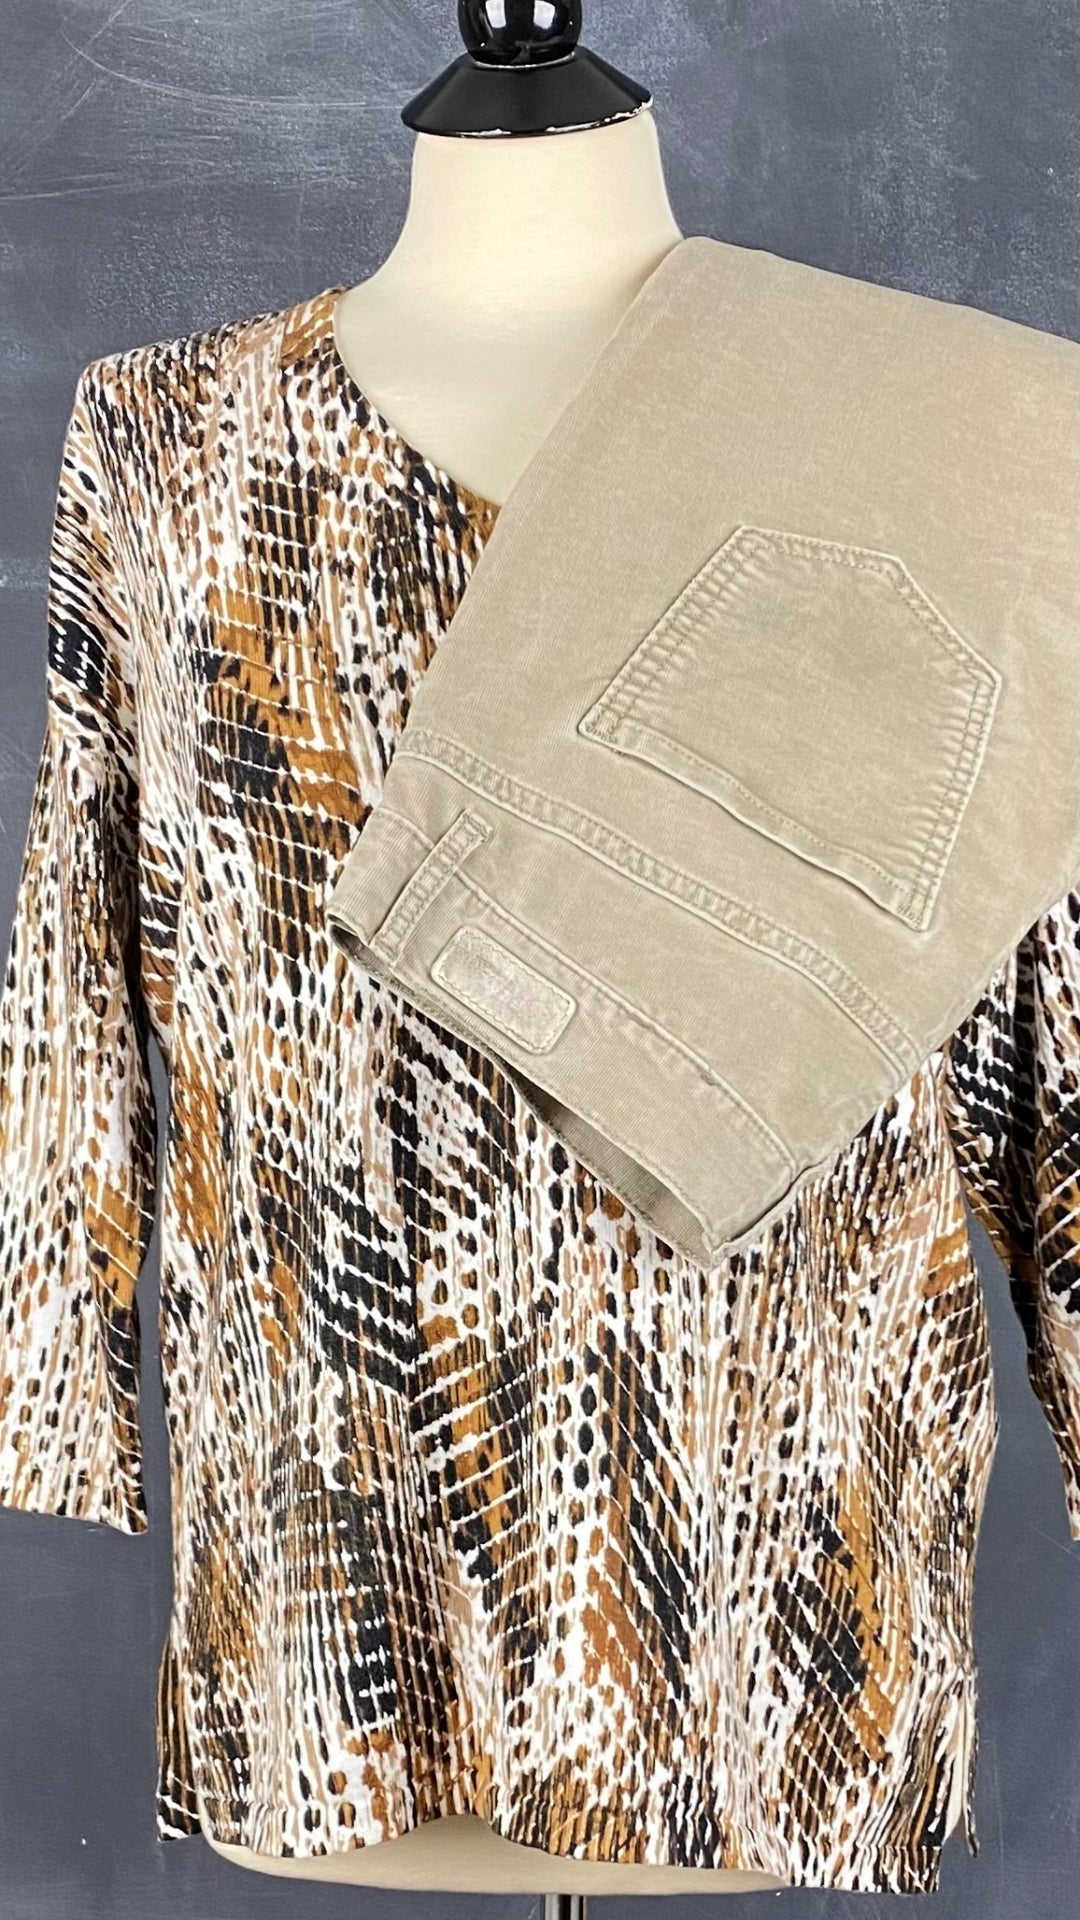 Chandail tricot col v motif style léopard Olsen, taille s/m. Vue de l'agencement avec le pantalon en velours côtelé Brax.